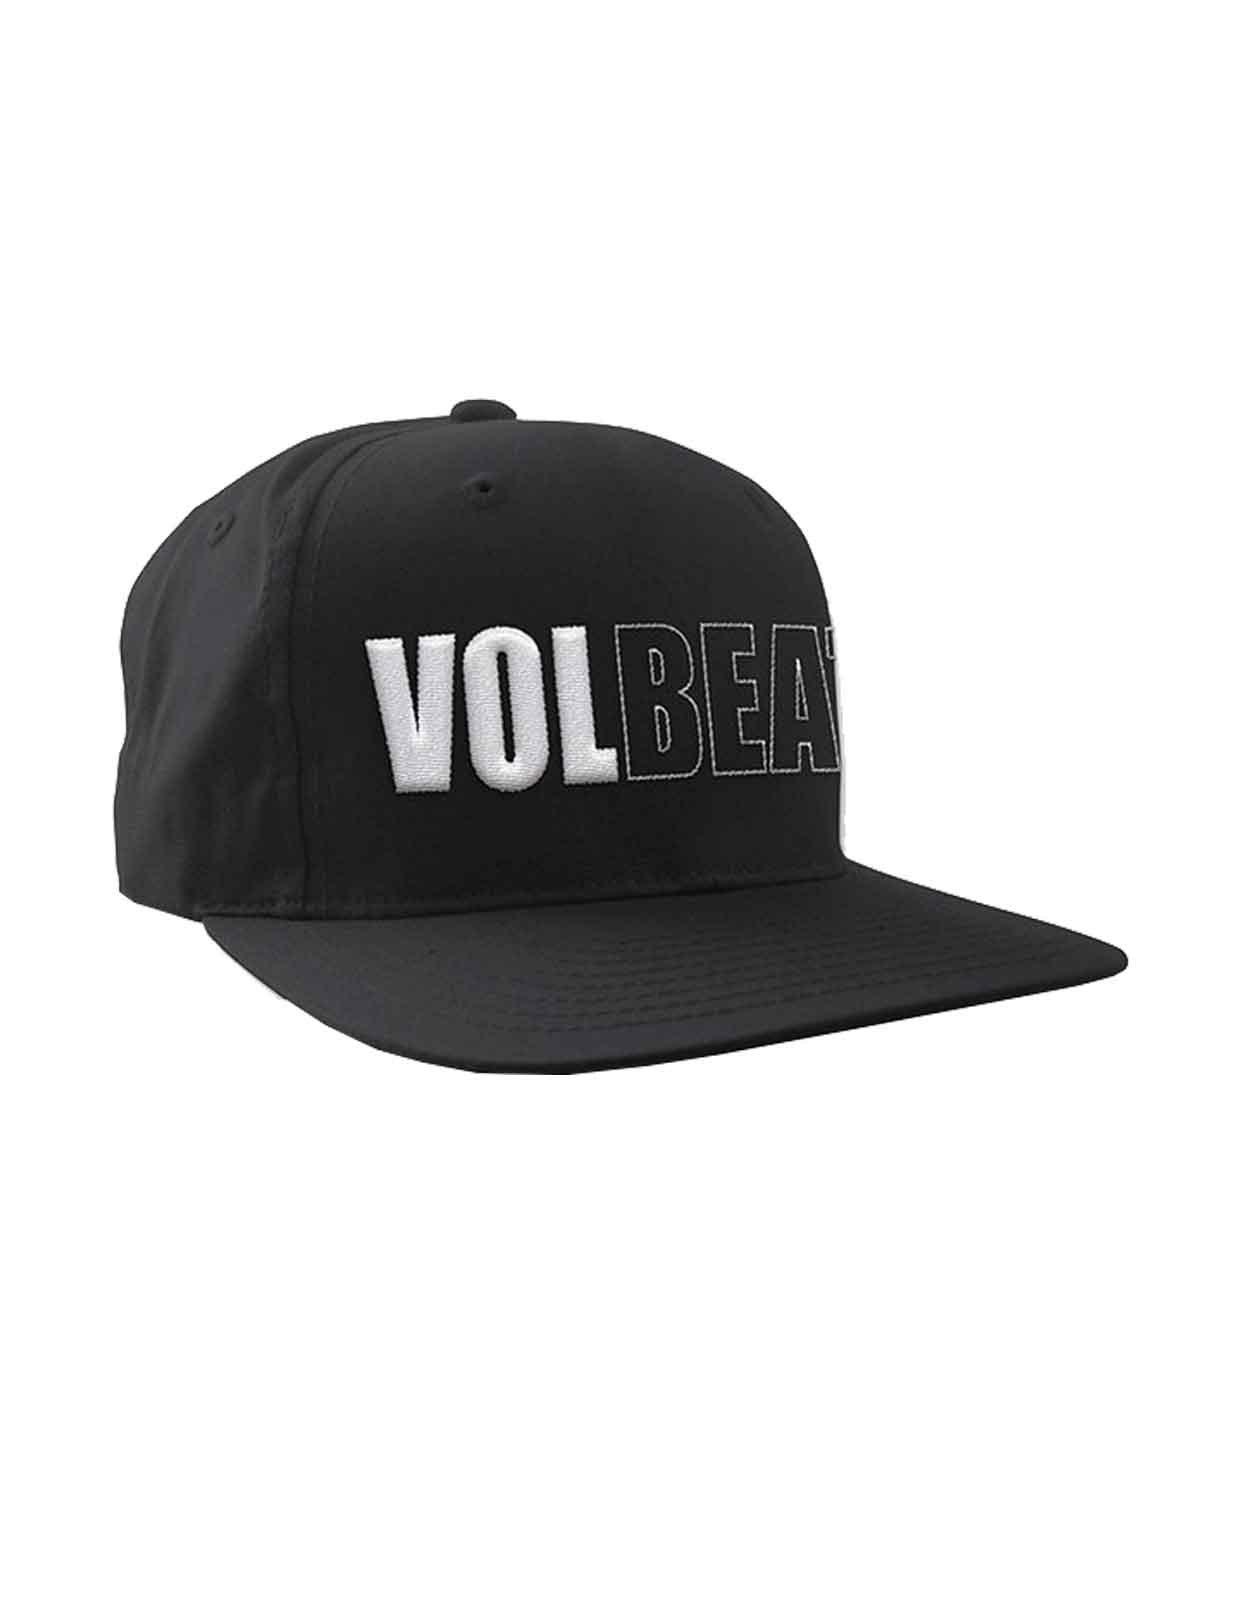 Бейсбольная кепка Snapback с объемным логотипом Band Volbeat, черный бейсболка virtus pro snapback atributika